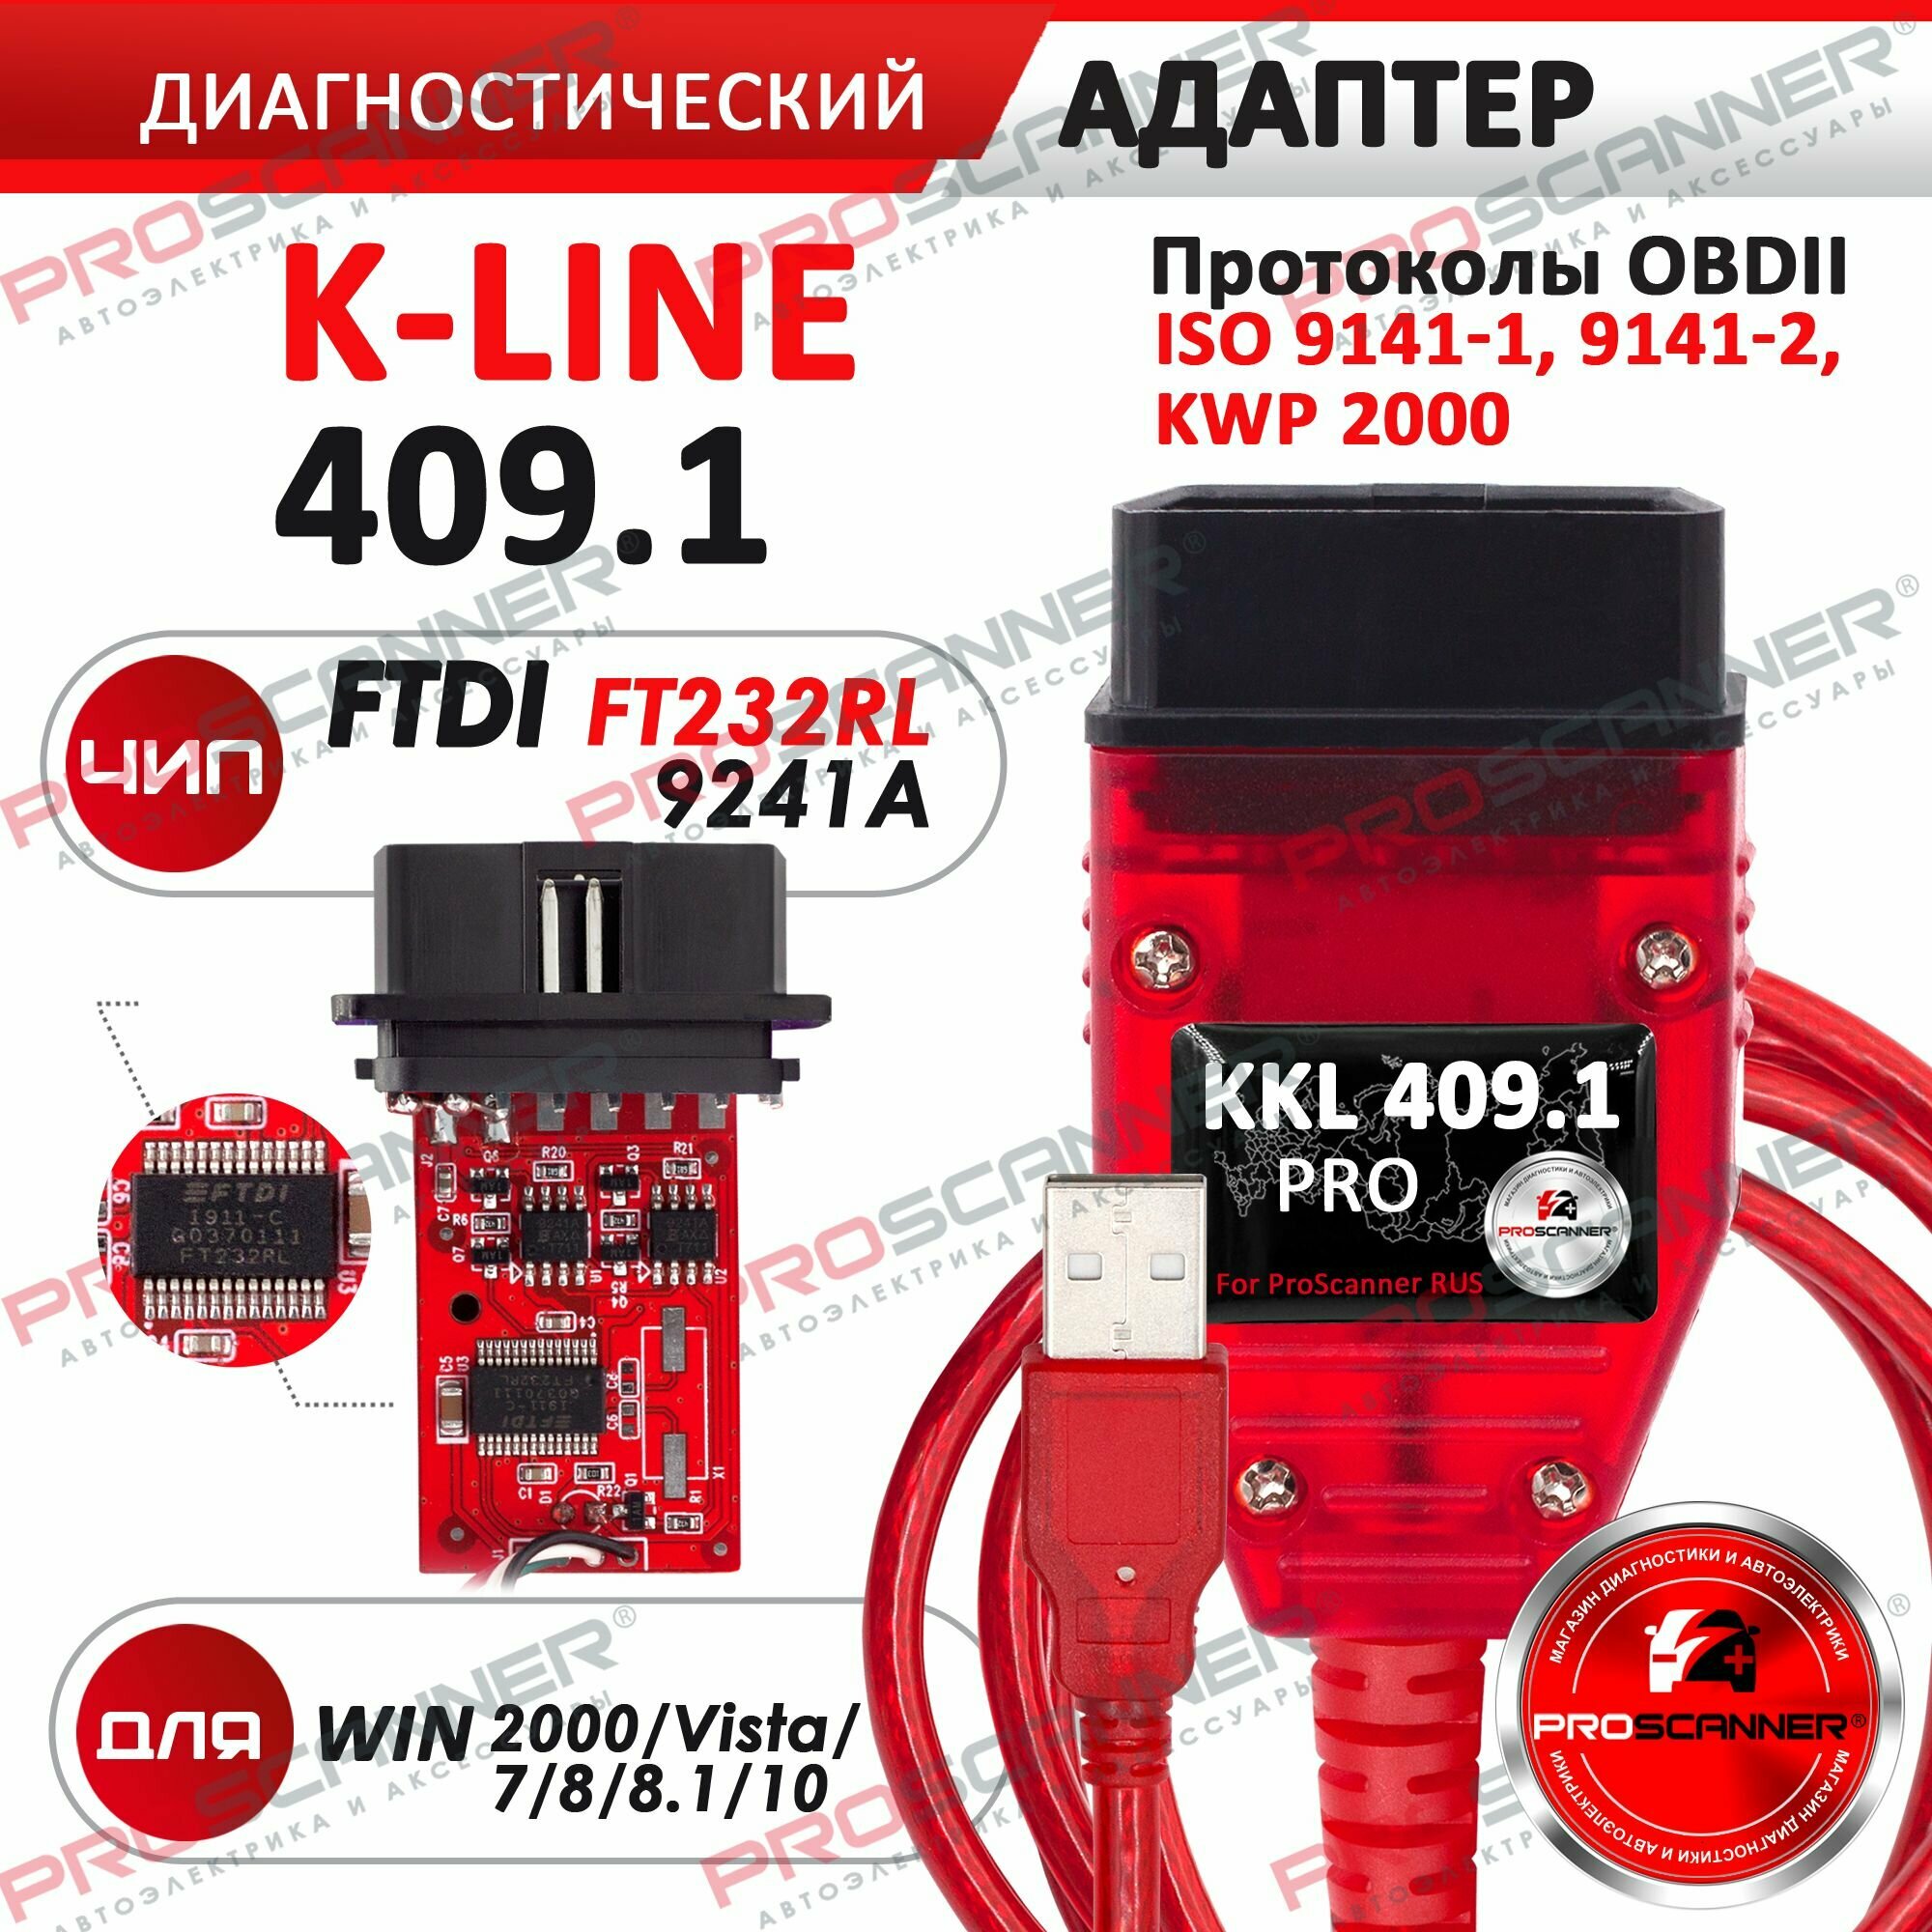 Автосканер VAG COM KKL PRO 409.1 чип FTDI FT232RL 9241A мультимарочный сканер для Audi, Volkswagen, Skoda, Seat, Ваз, Газ и Daewoo, Mercedes